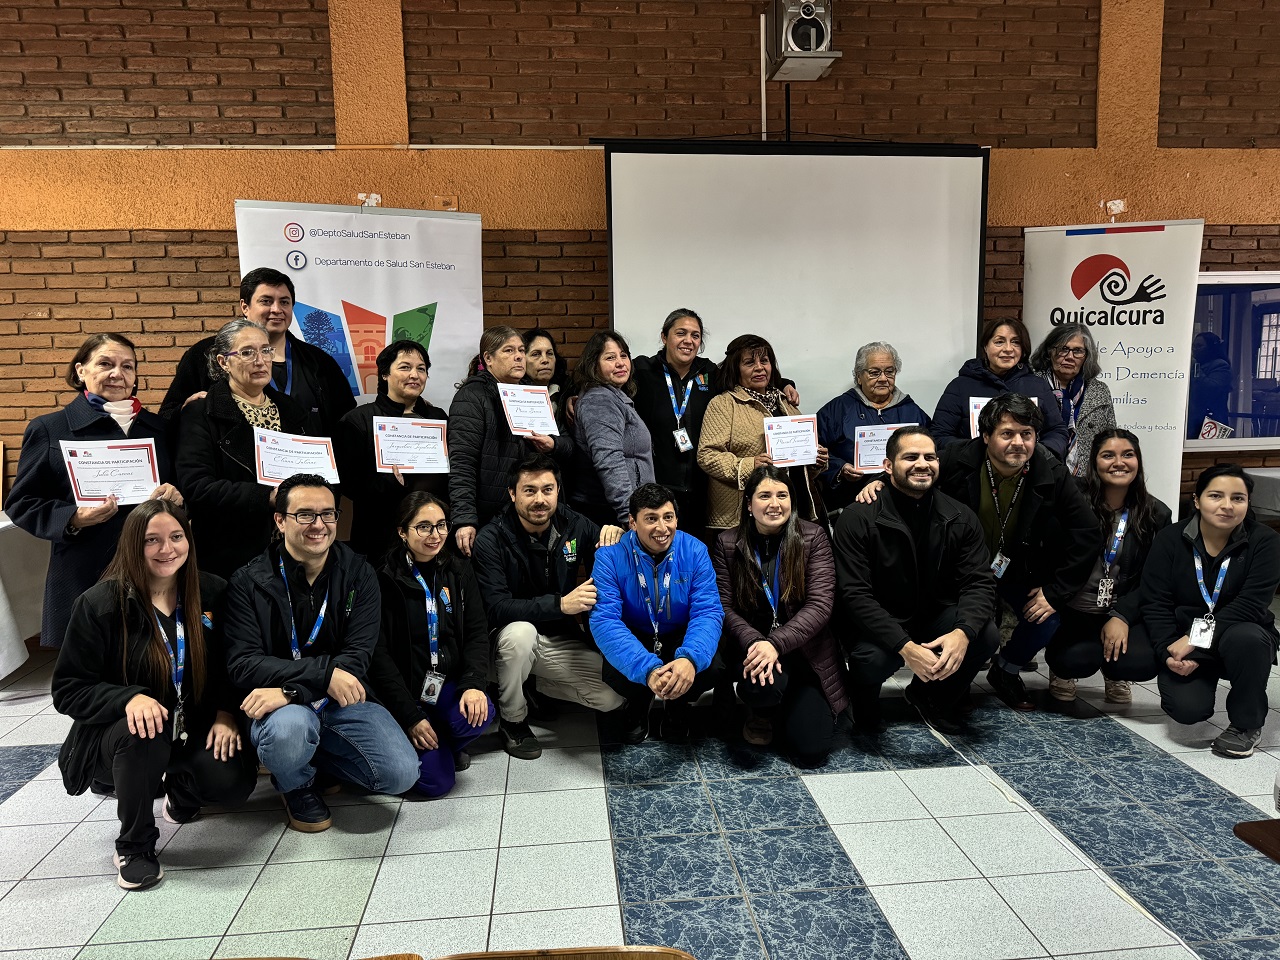 SAN ESTEBAN: Departamento de Salud de San Esteban y Centro Quicalcura desarrollaron exitoso programa colaborativo piloto para usuarios con demencia y pérdida de memoria